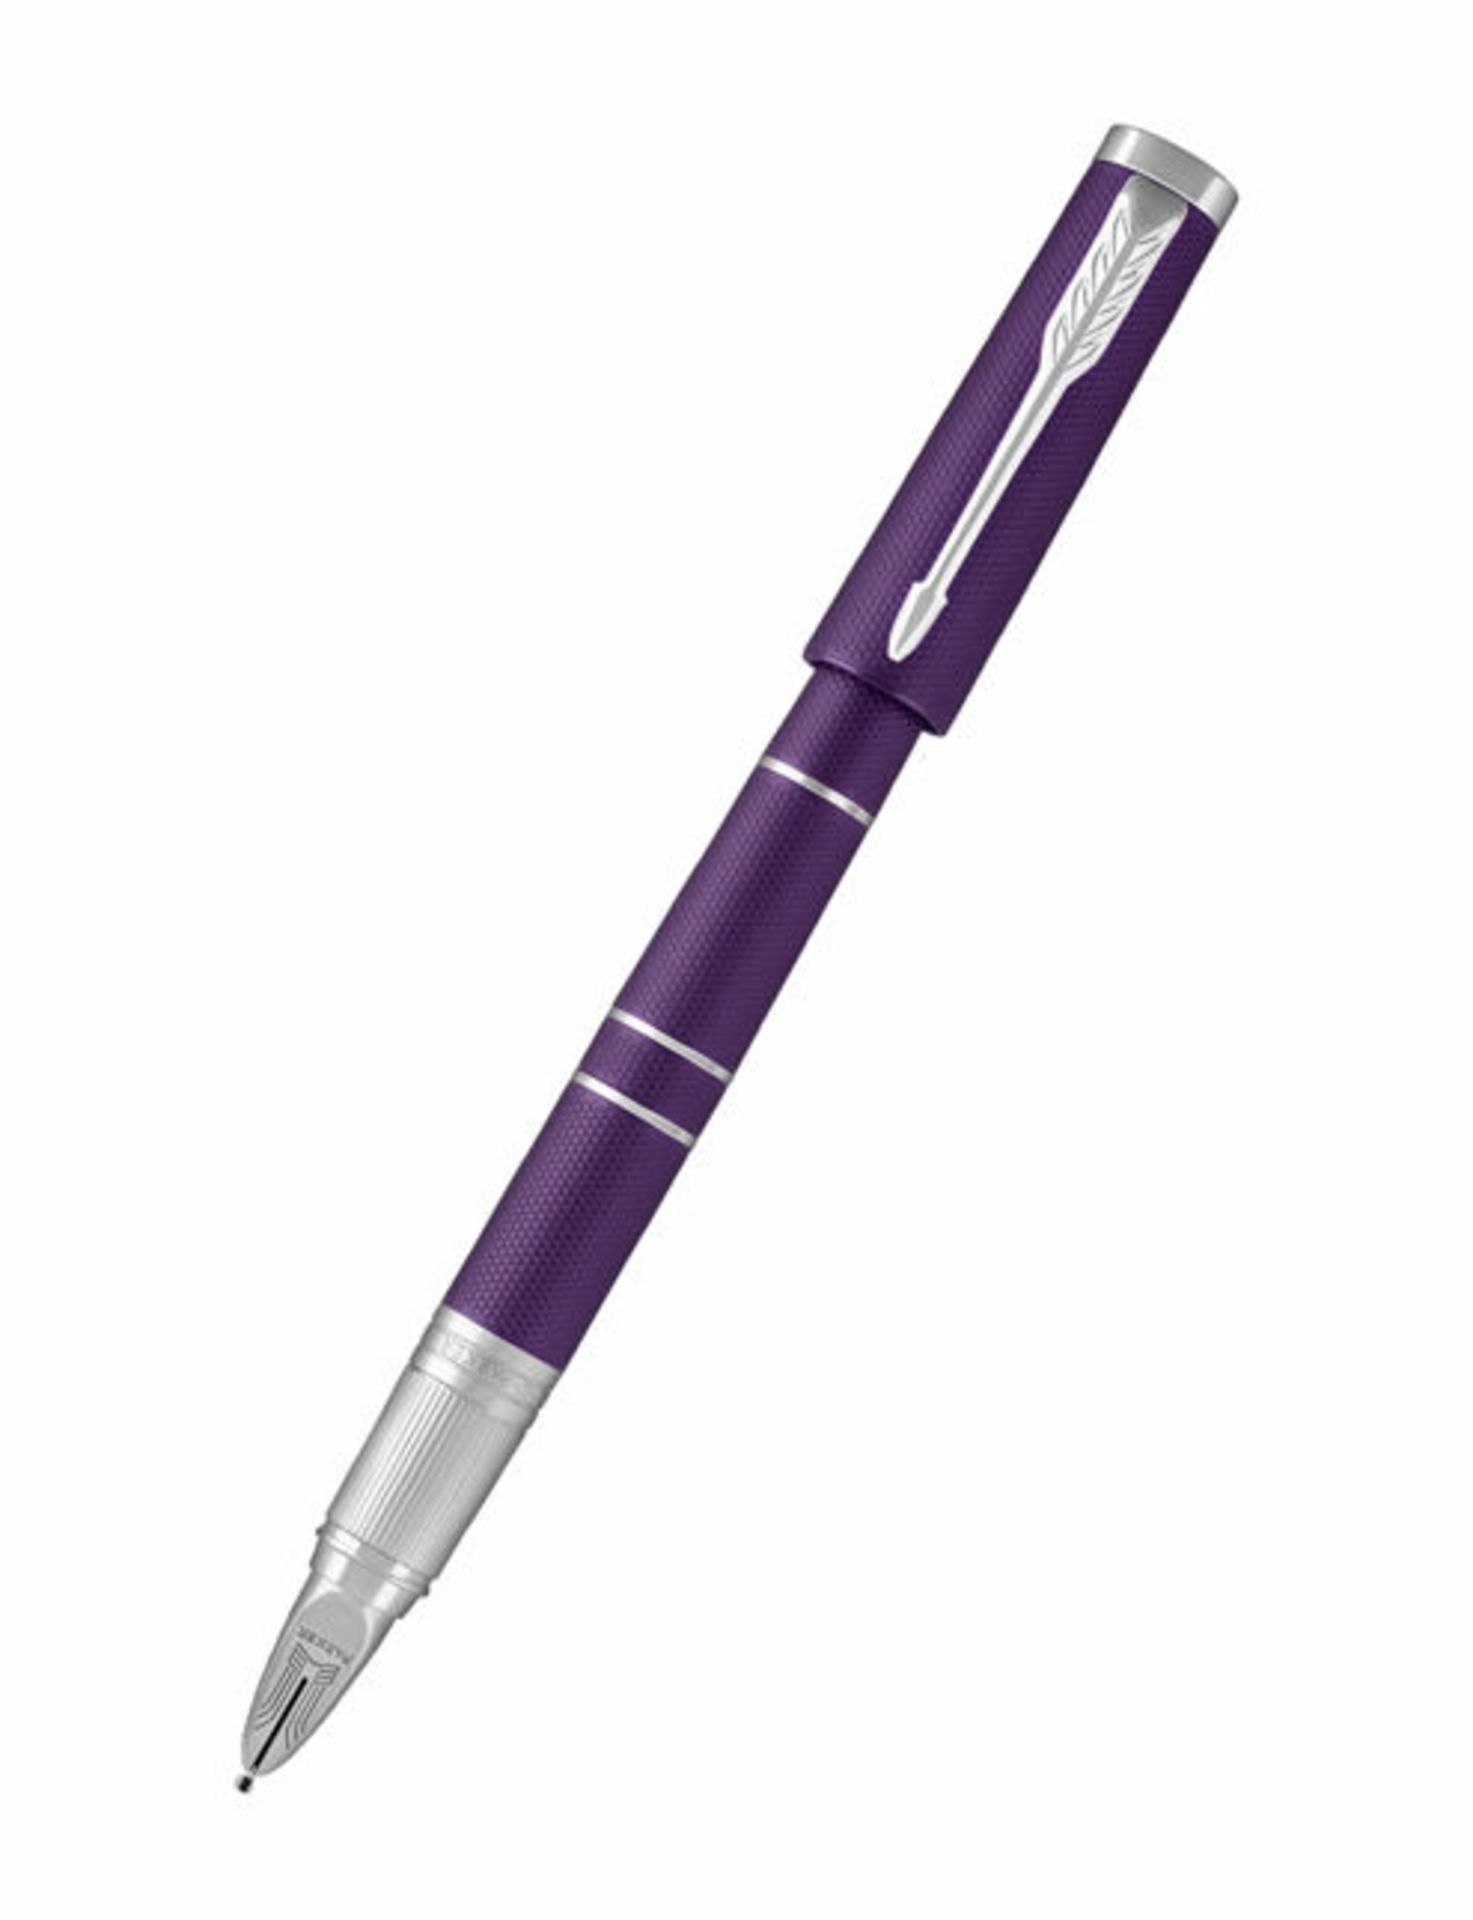 + VAT Brand New Parker Ingenuity Slim Pen - Decorated With Elegant Etched Patterns & Polished